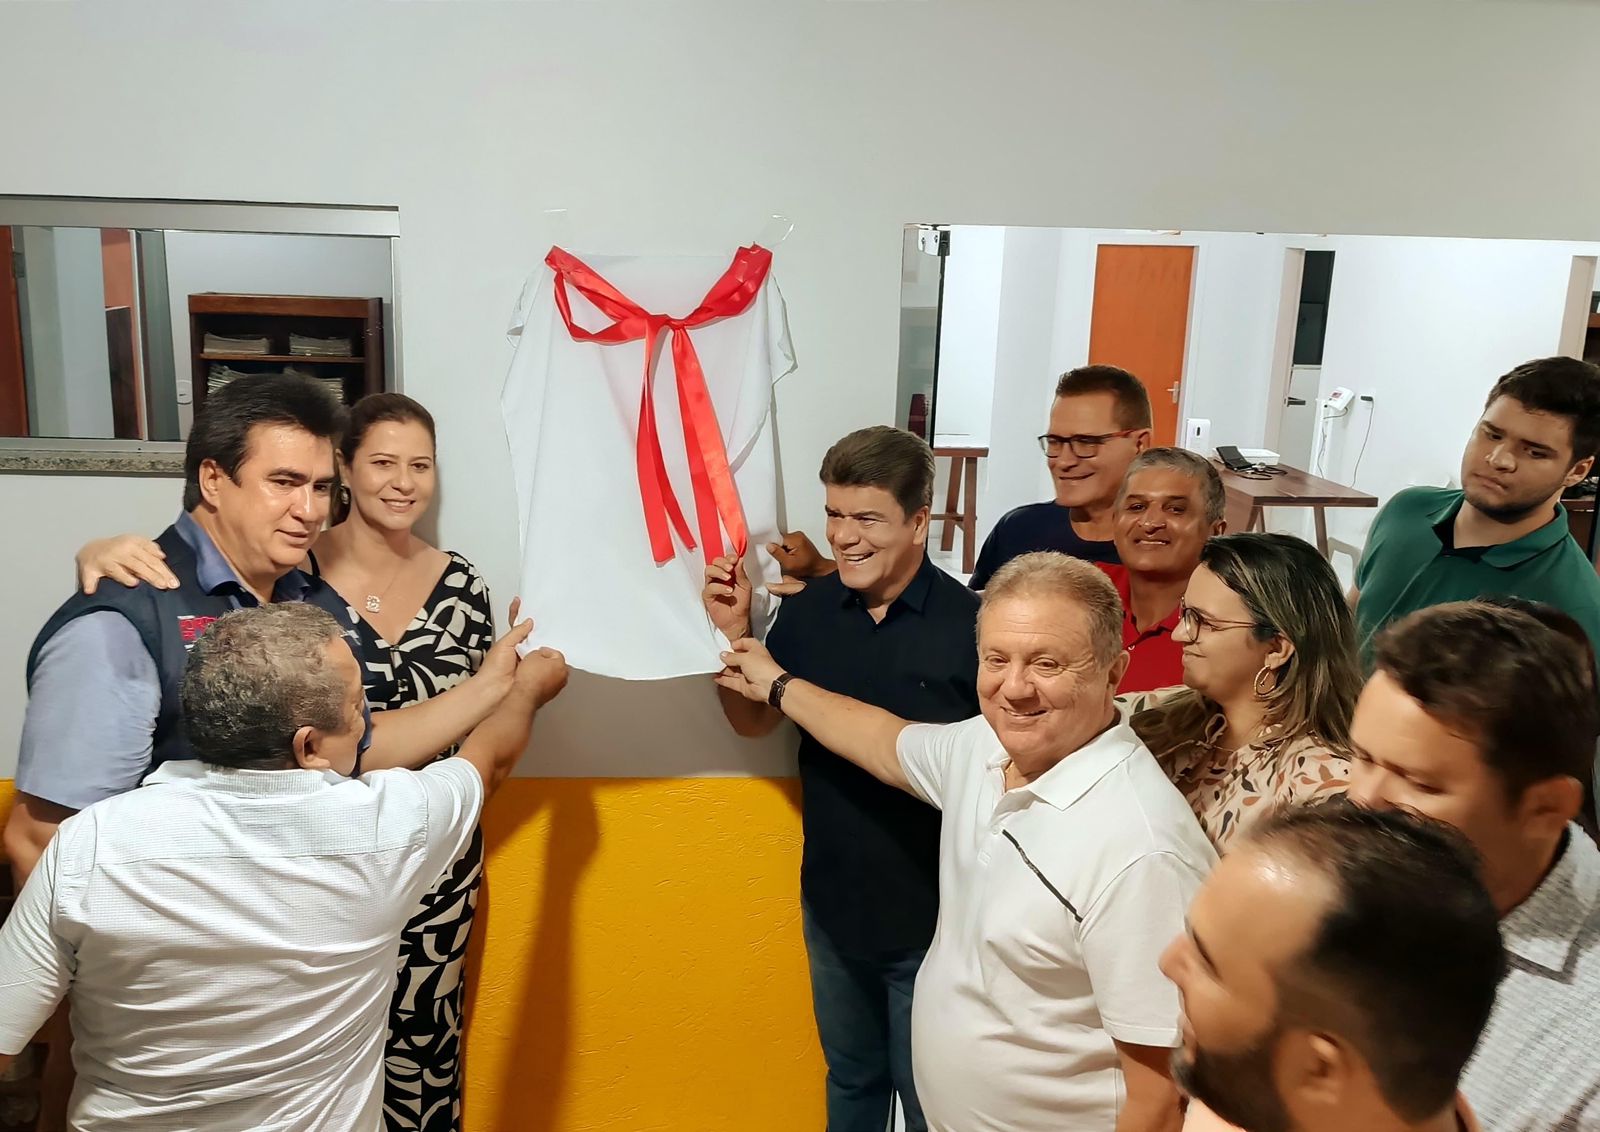 Inauguração da UBS do Coité e Região reafirma o compromisso com a saúde em Porto Franco